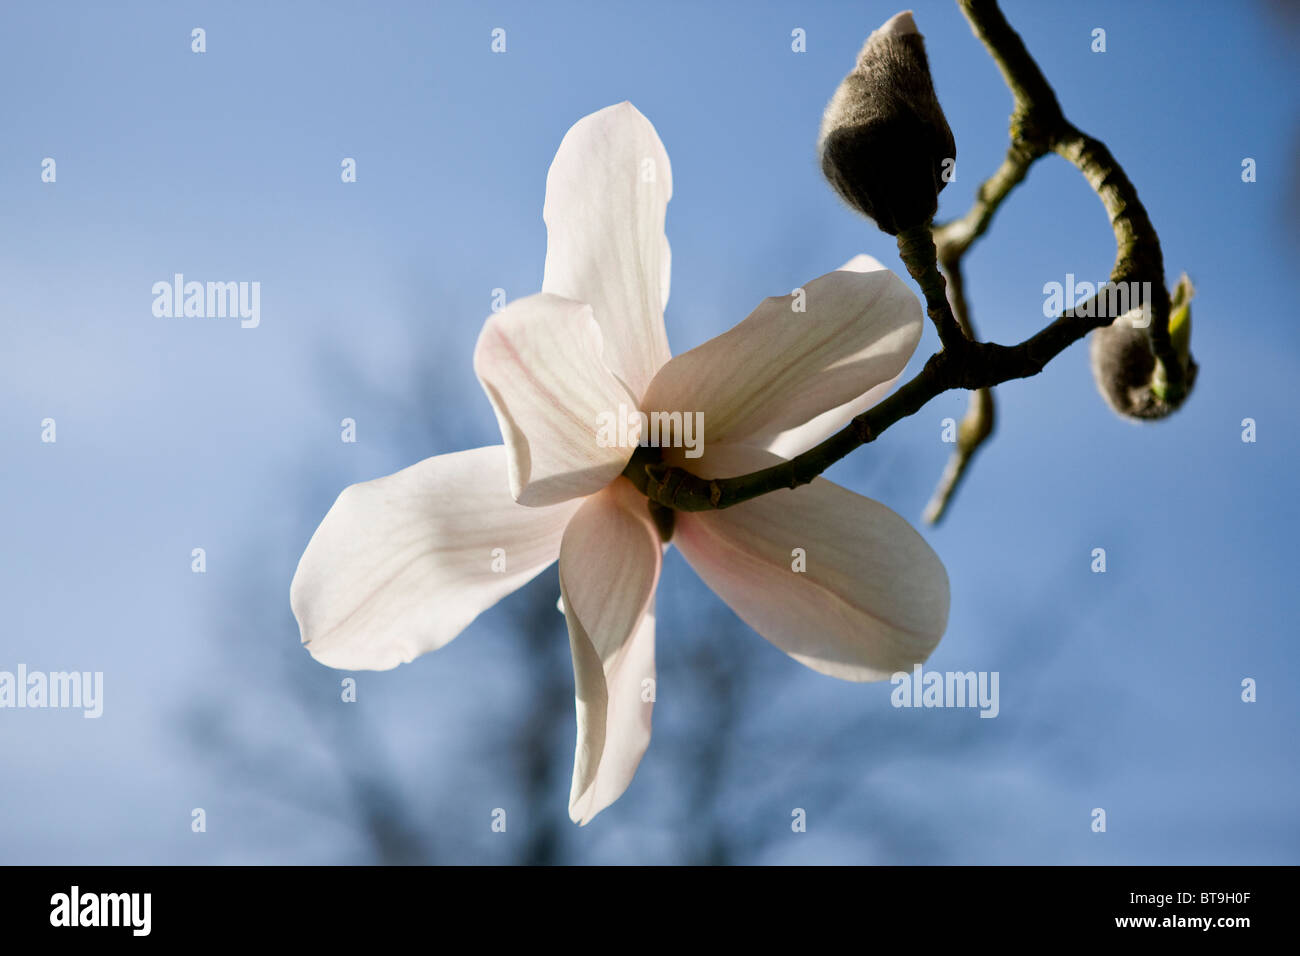 Un fiore di magnolia e bud Foto Stock